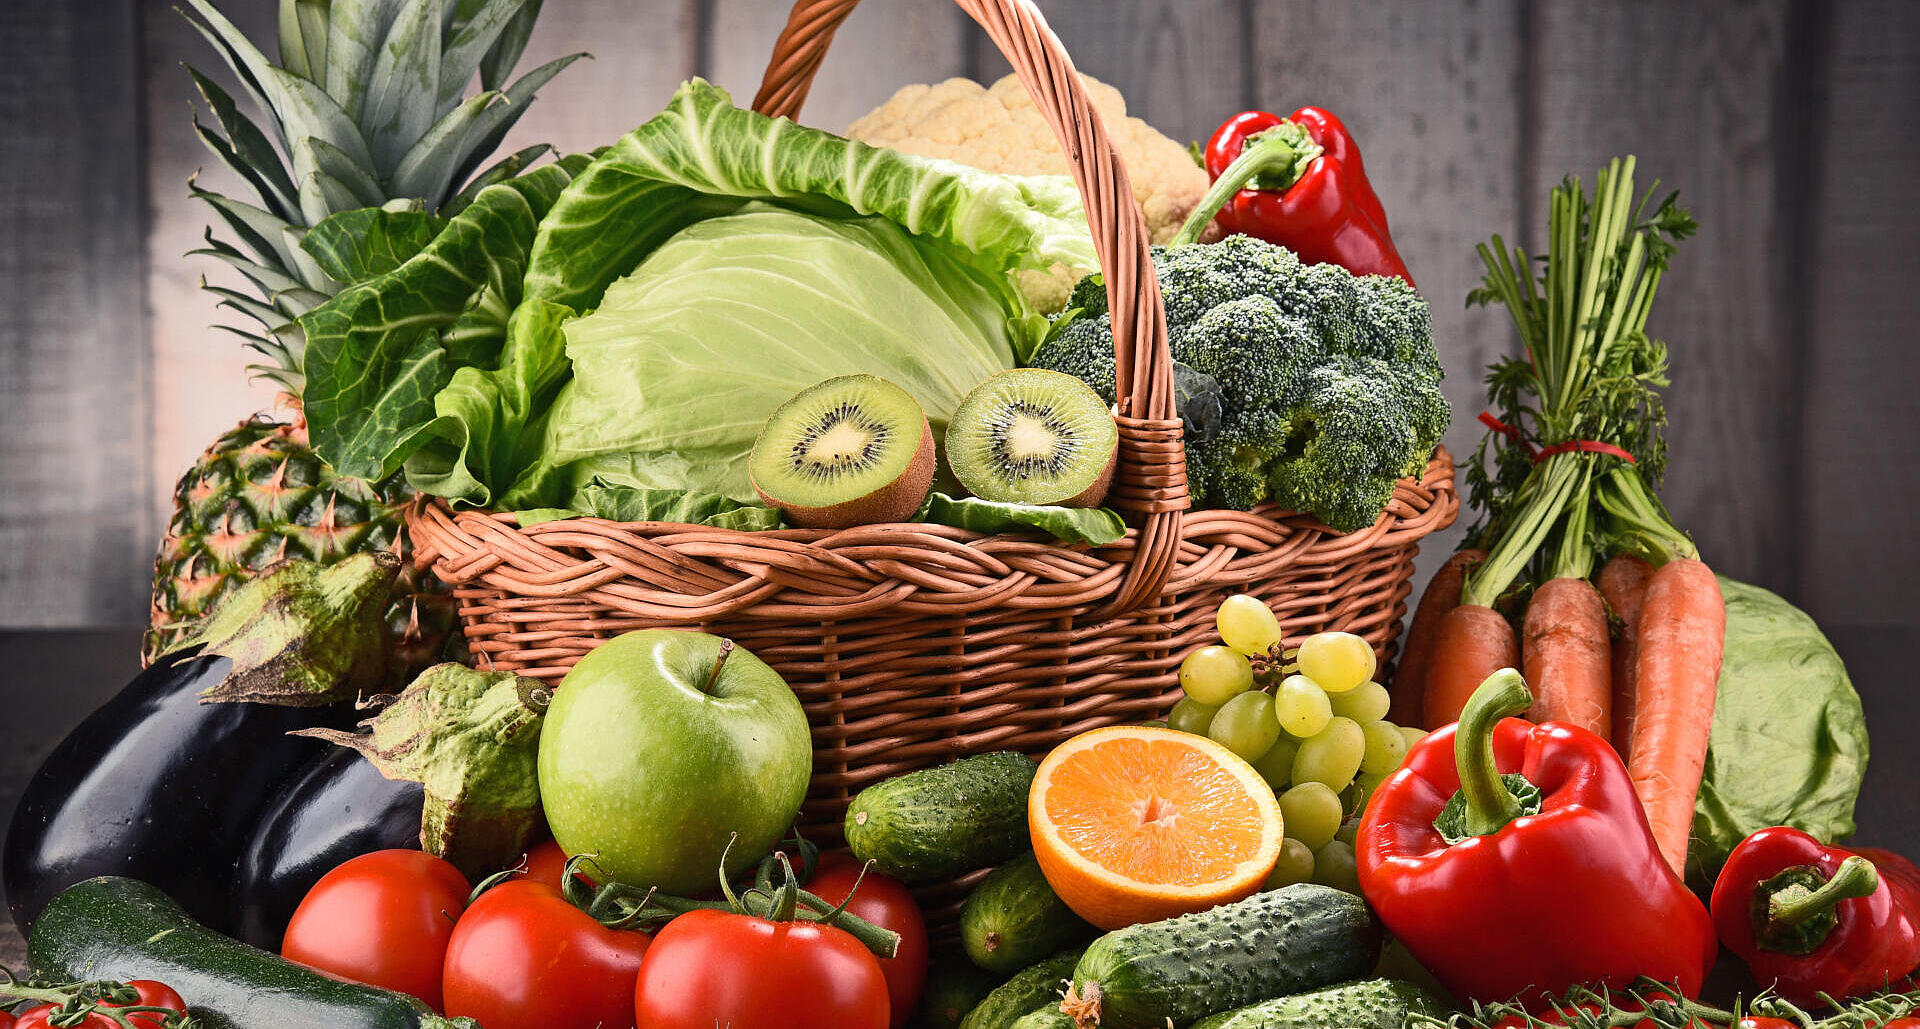 2. Gemüse und Obst – nimm „5 am Tag“: Genießen Sie mindestens 3 Portionen Gemüse und 2 Portionen Obst am Tag. Zur bunten Auswahl gehören auch Hülsenfrüchte wie Linsen, Kichererbsen und Bohnen sowie (ungesalzene) Nüsse.